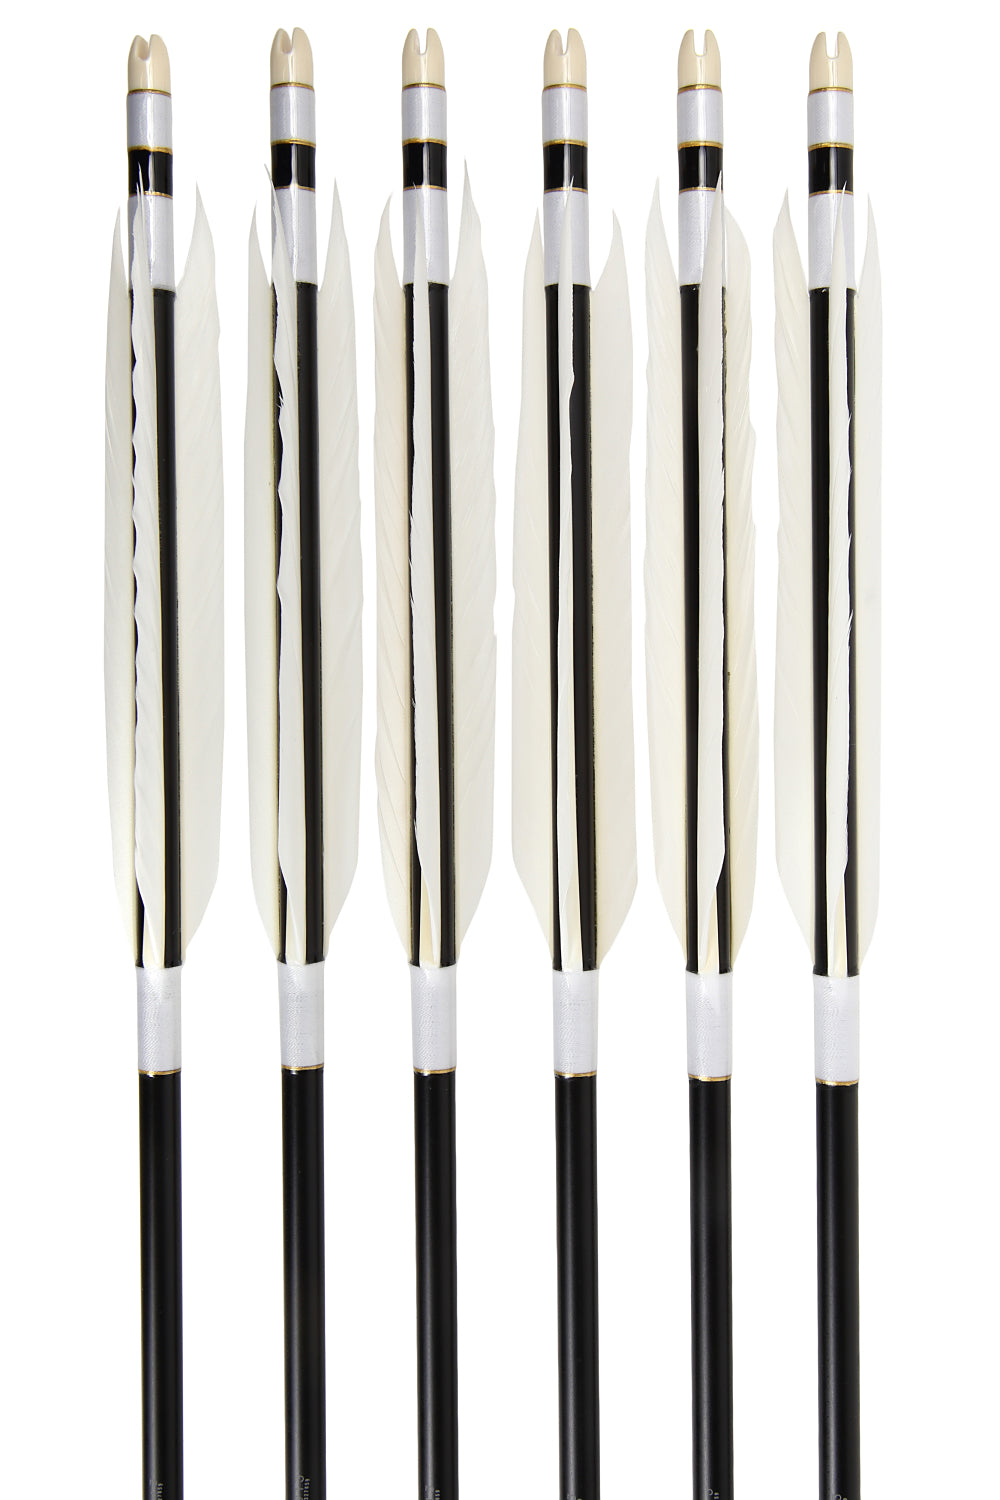 【D-1723】 Enteki Arrows White Goose - Set of 6 (EASTON 1913)  遠的矢 白グース 1913シャフト 6本組　イーストン　黒シャフト 推奨弓力13kg～16kg